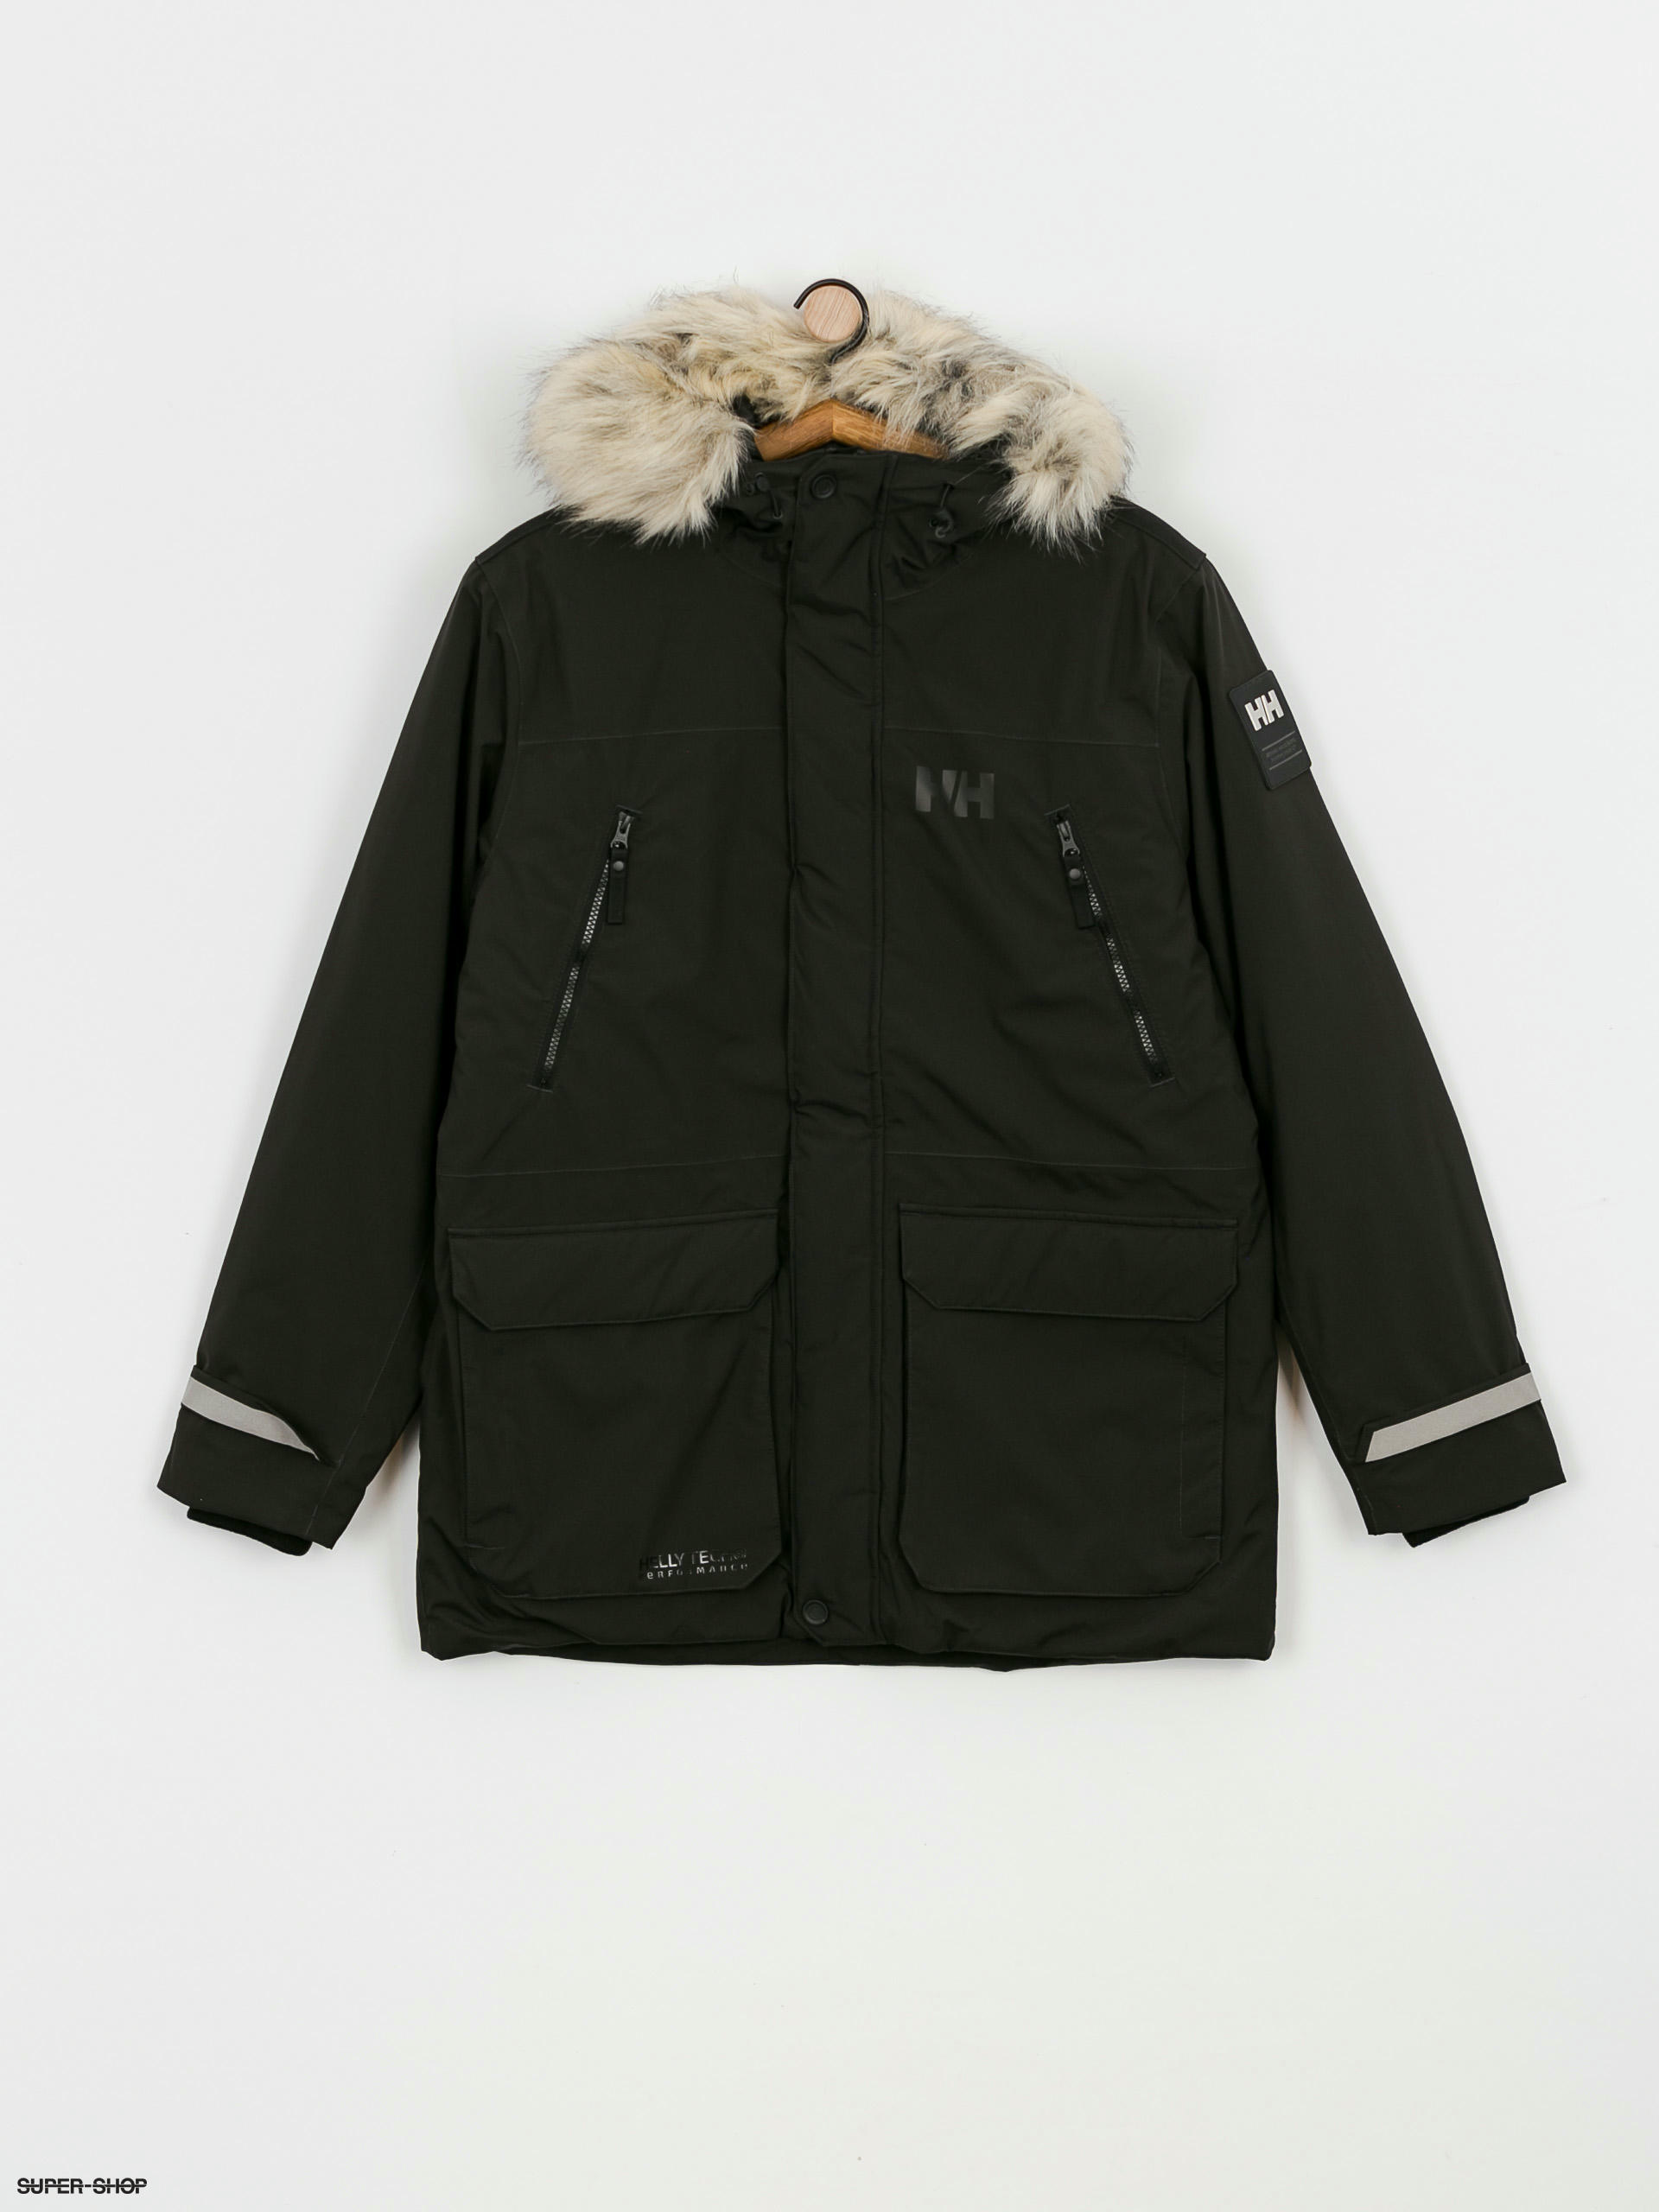 Helly Hansen jacket REINE PARKA men's black color 53630